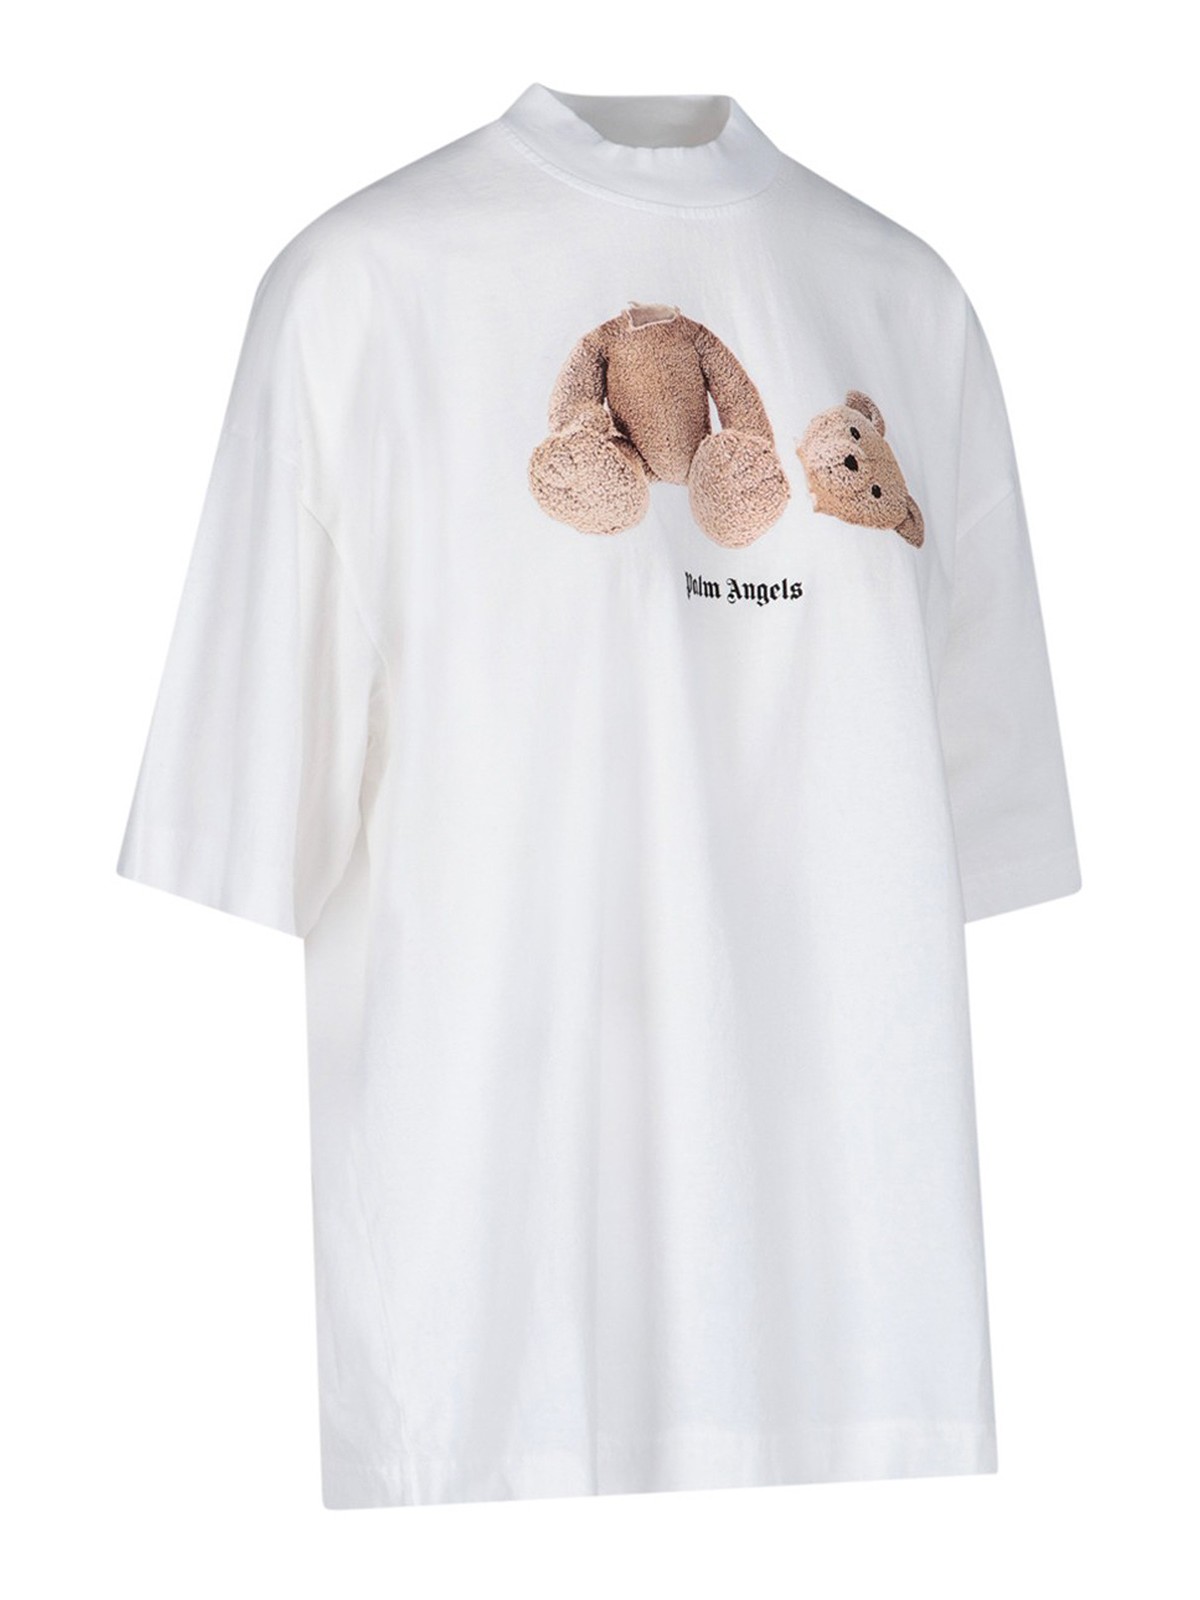 Palm Angels Bear Shirt, Teddy Bear Tee Tops Sweatshirt